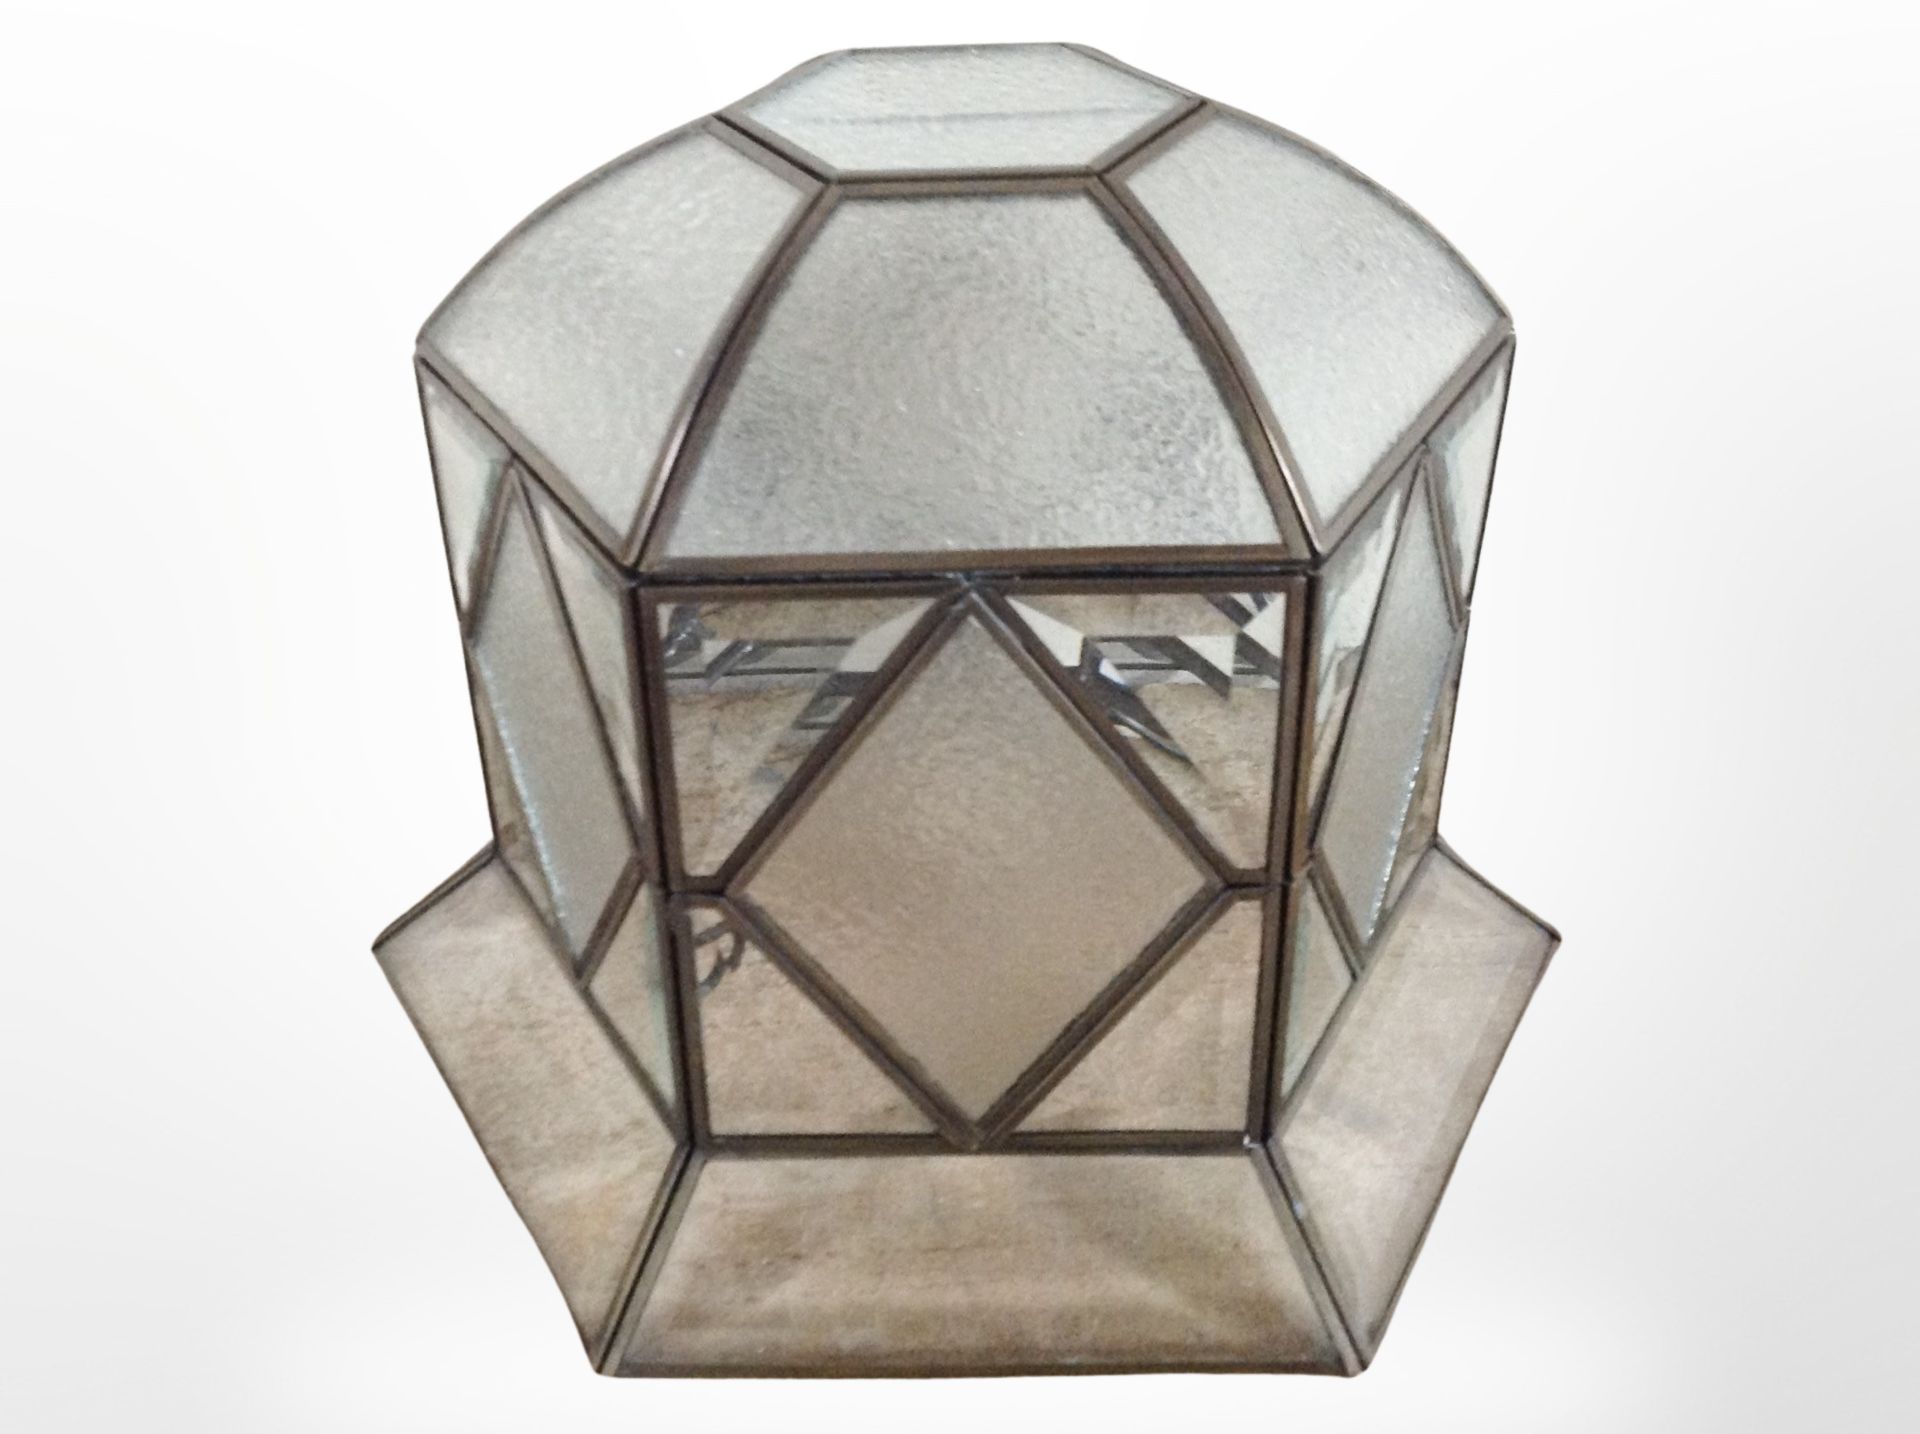 A metal and glass light shade, diameter 24cm.